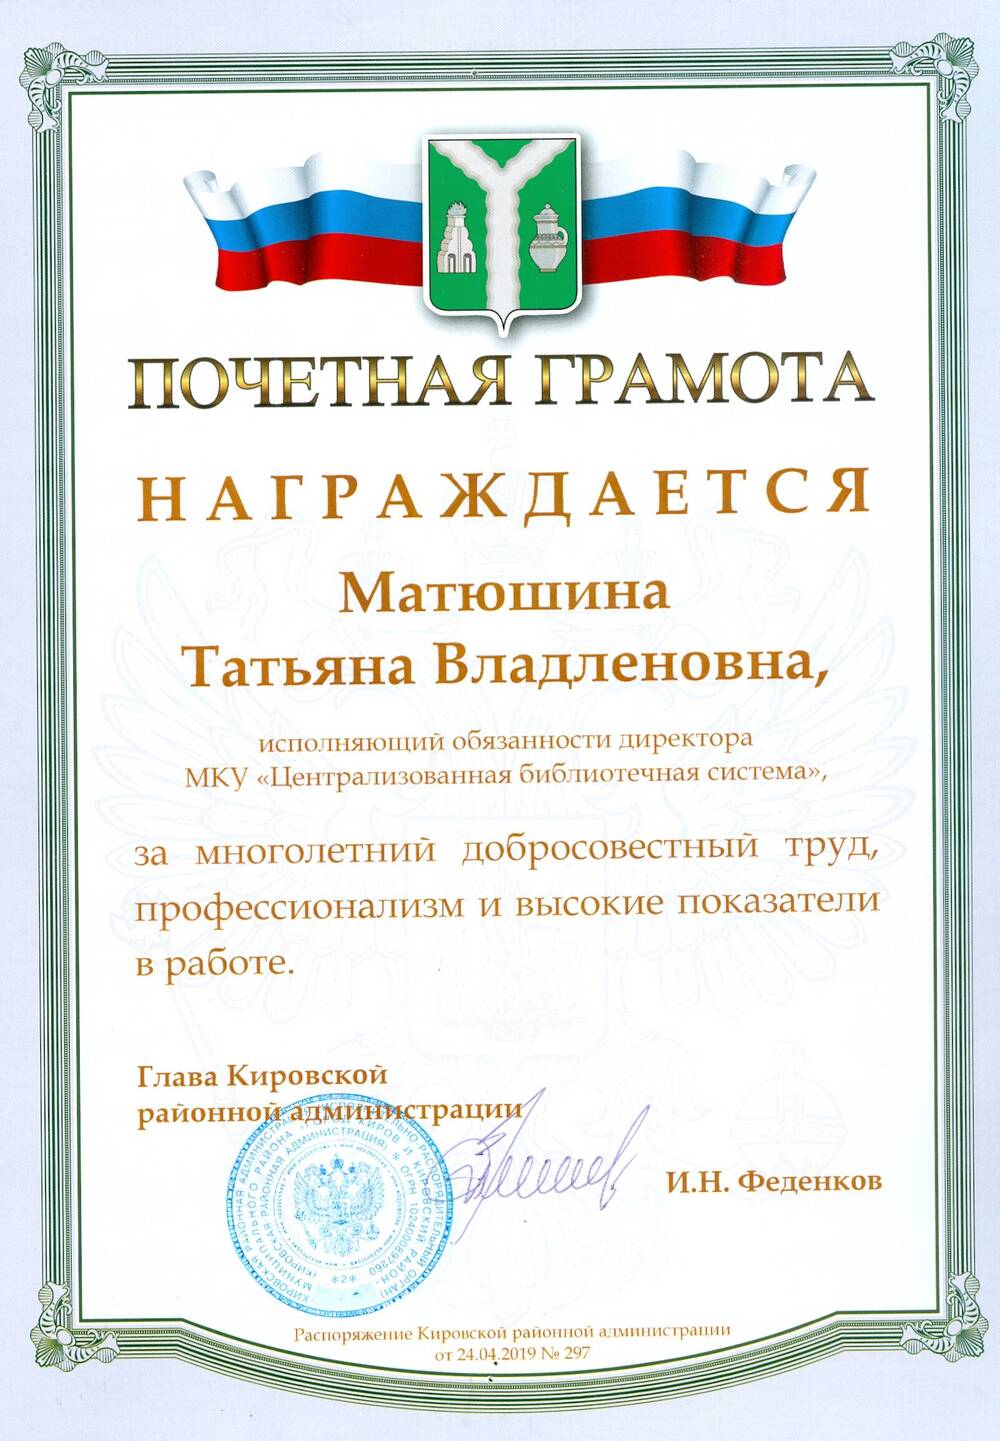 Почетная грамота Матюшиной Т. В. от главы Кировской районной администрации